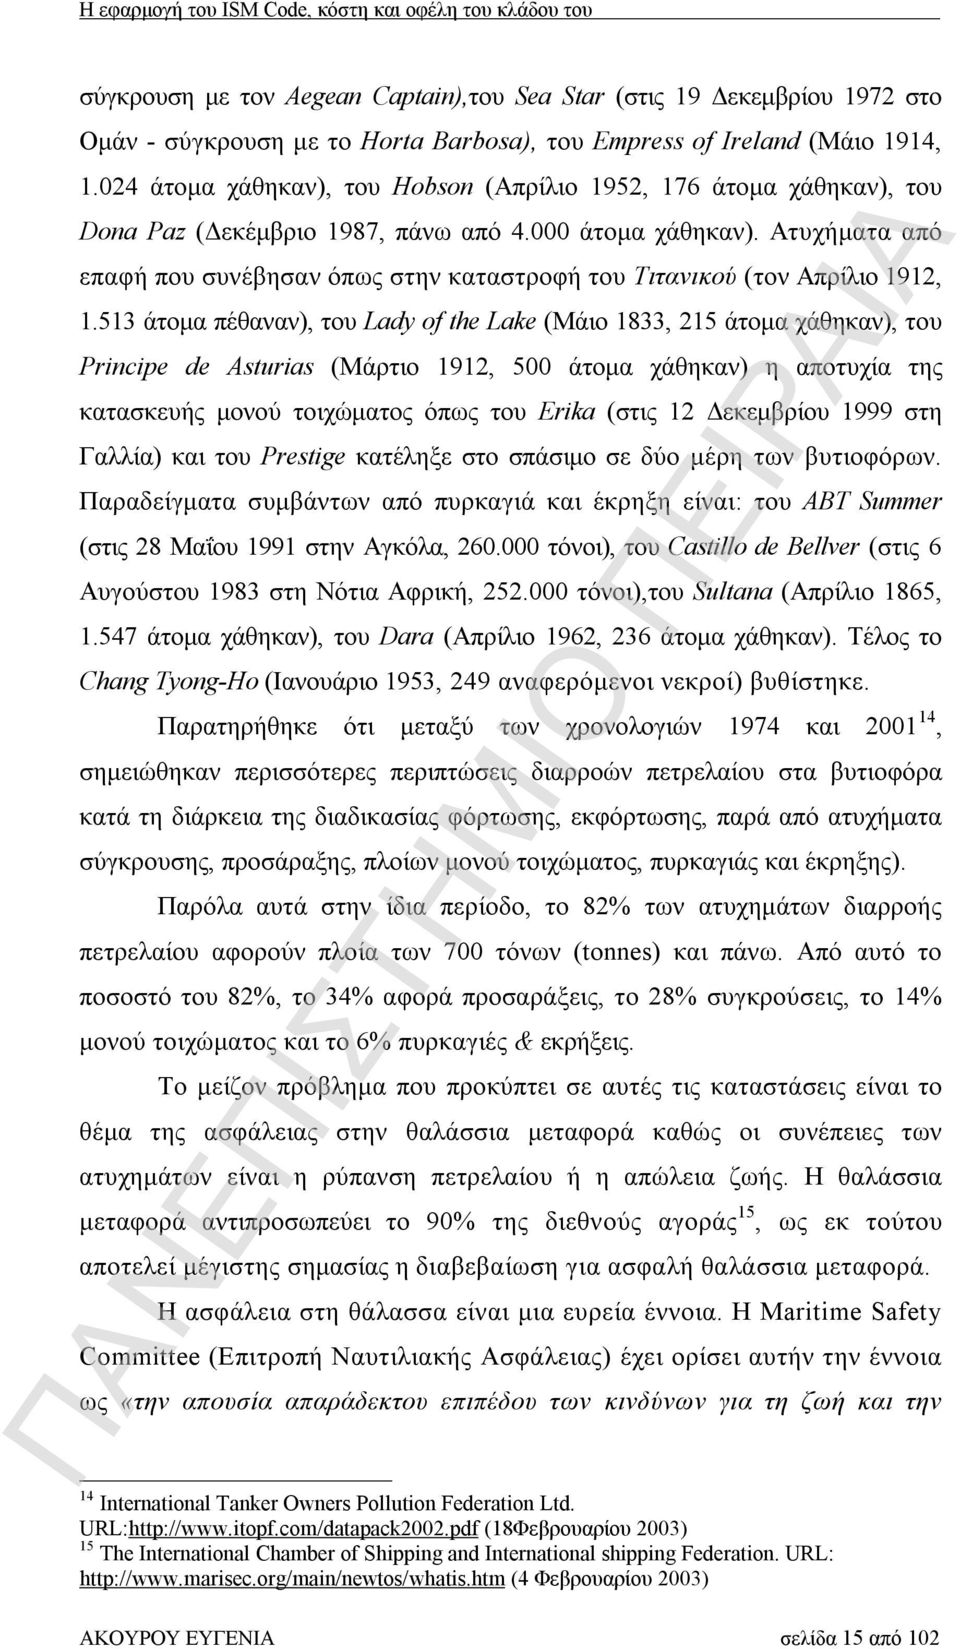 Ατυχήματα από επαφή που συνέβησαν όπως στην καταστροφή του Τιτανικού (τον Απρίλιο 1912, 1.